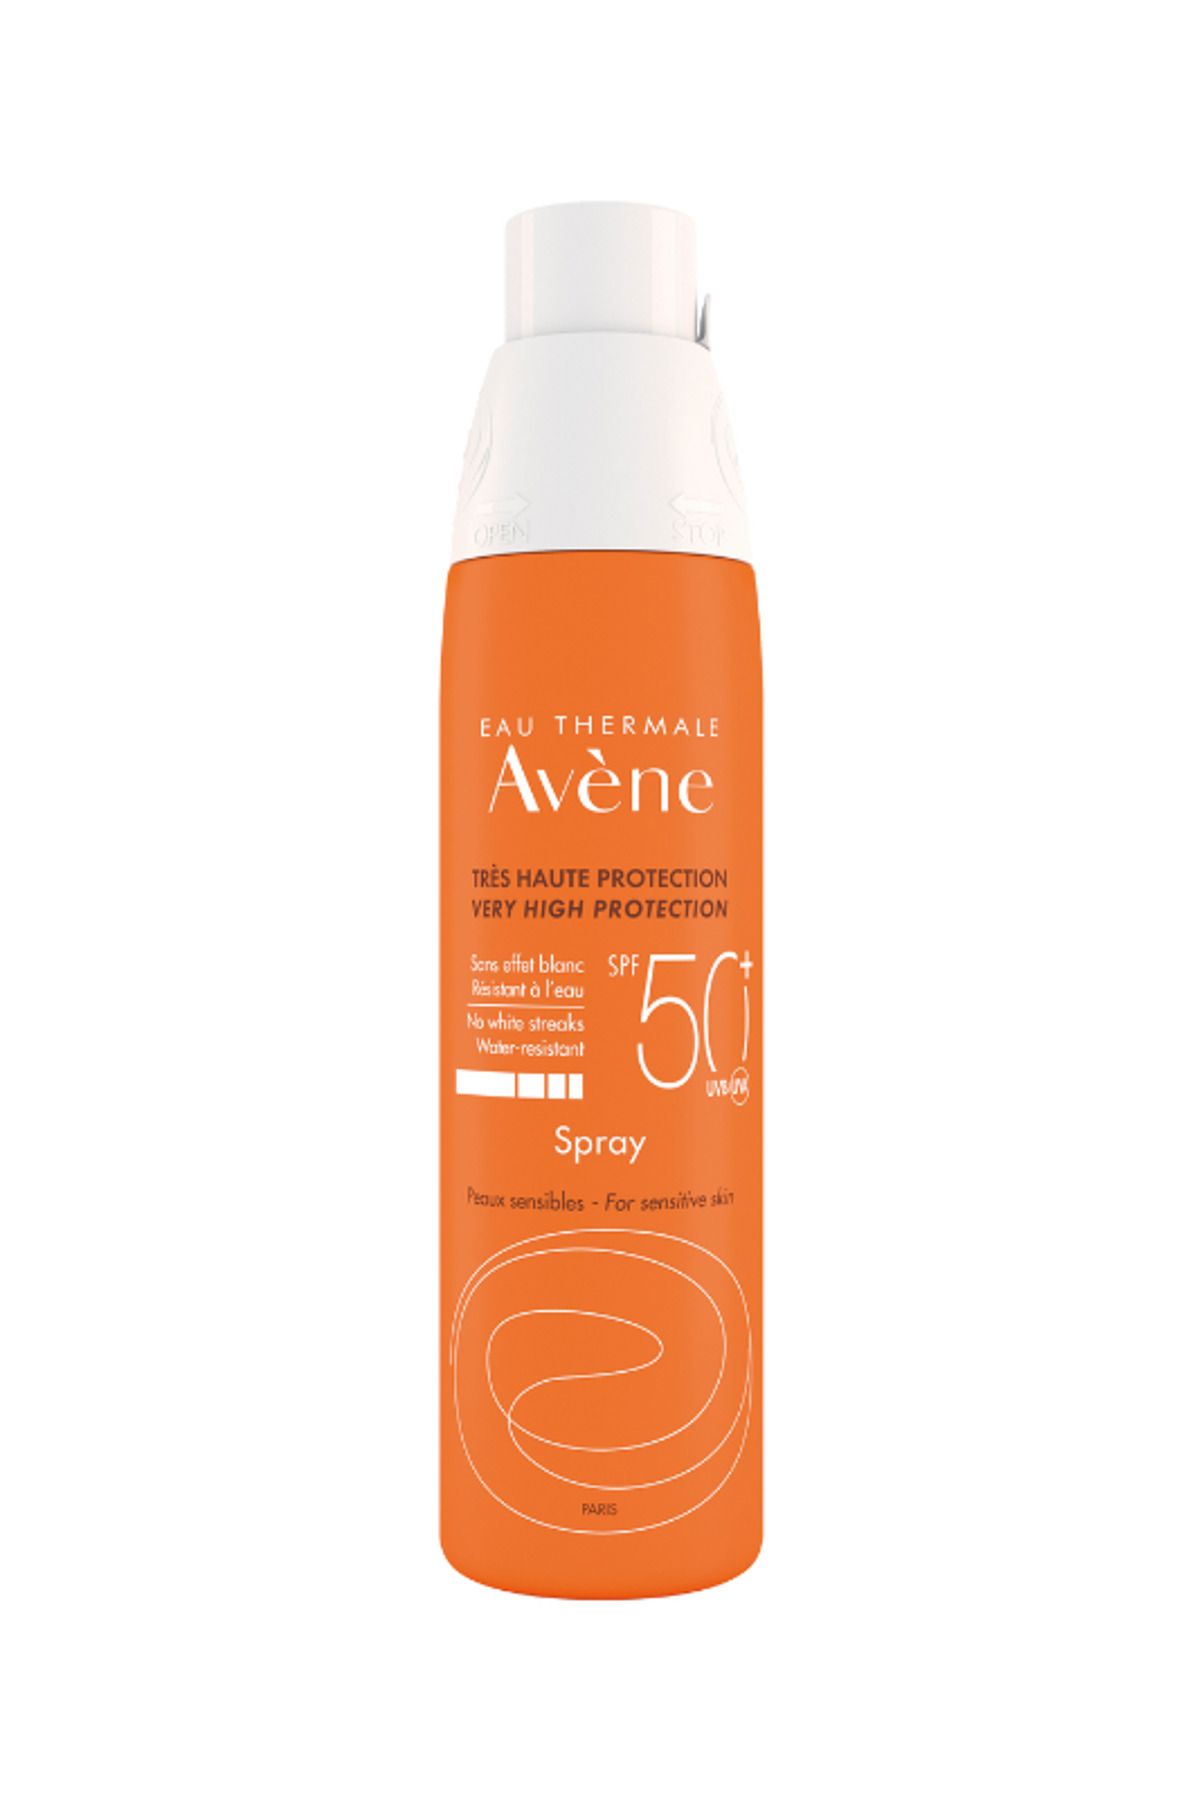 Avene Spray SPF 50+ Tüm Cilt Tipleri İçin Uygun Güneşten Koruyucu Vücut Spreyi 200 ml